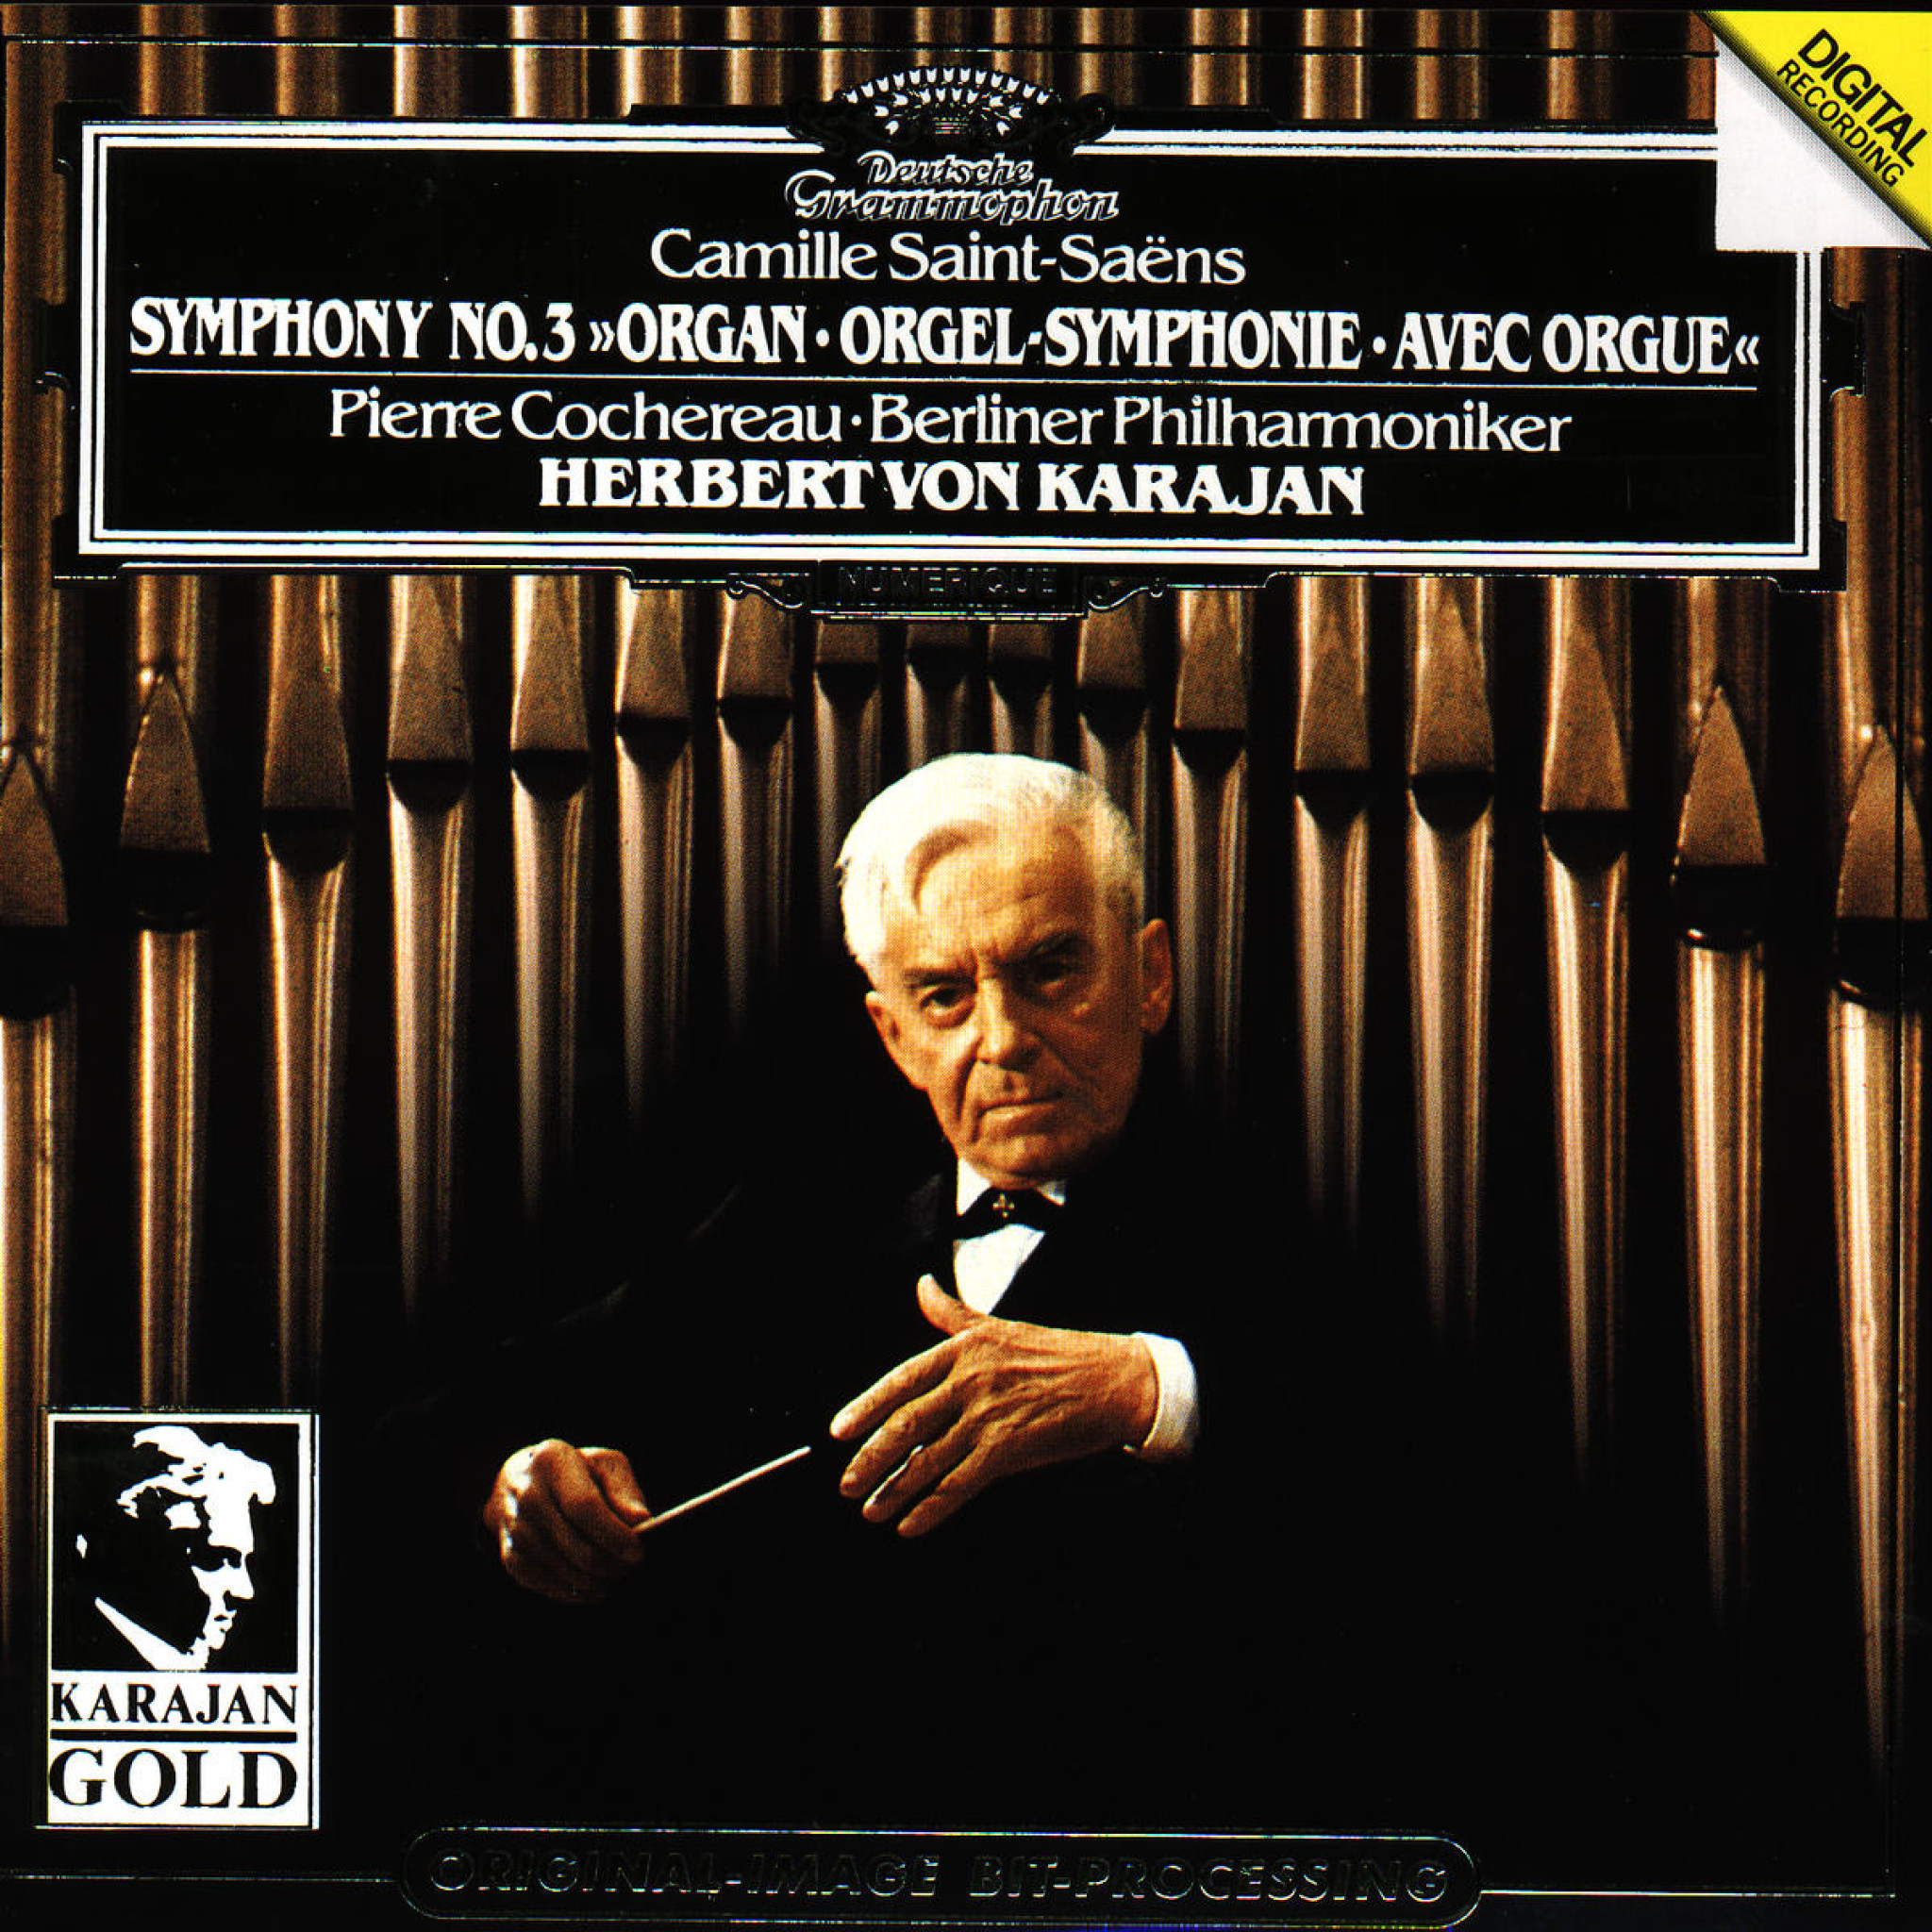 Saint-Saëns: Symphony No.3 "Organ" 0028943901428